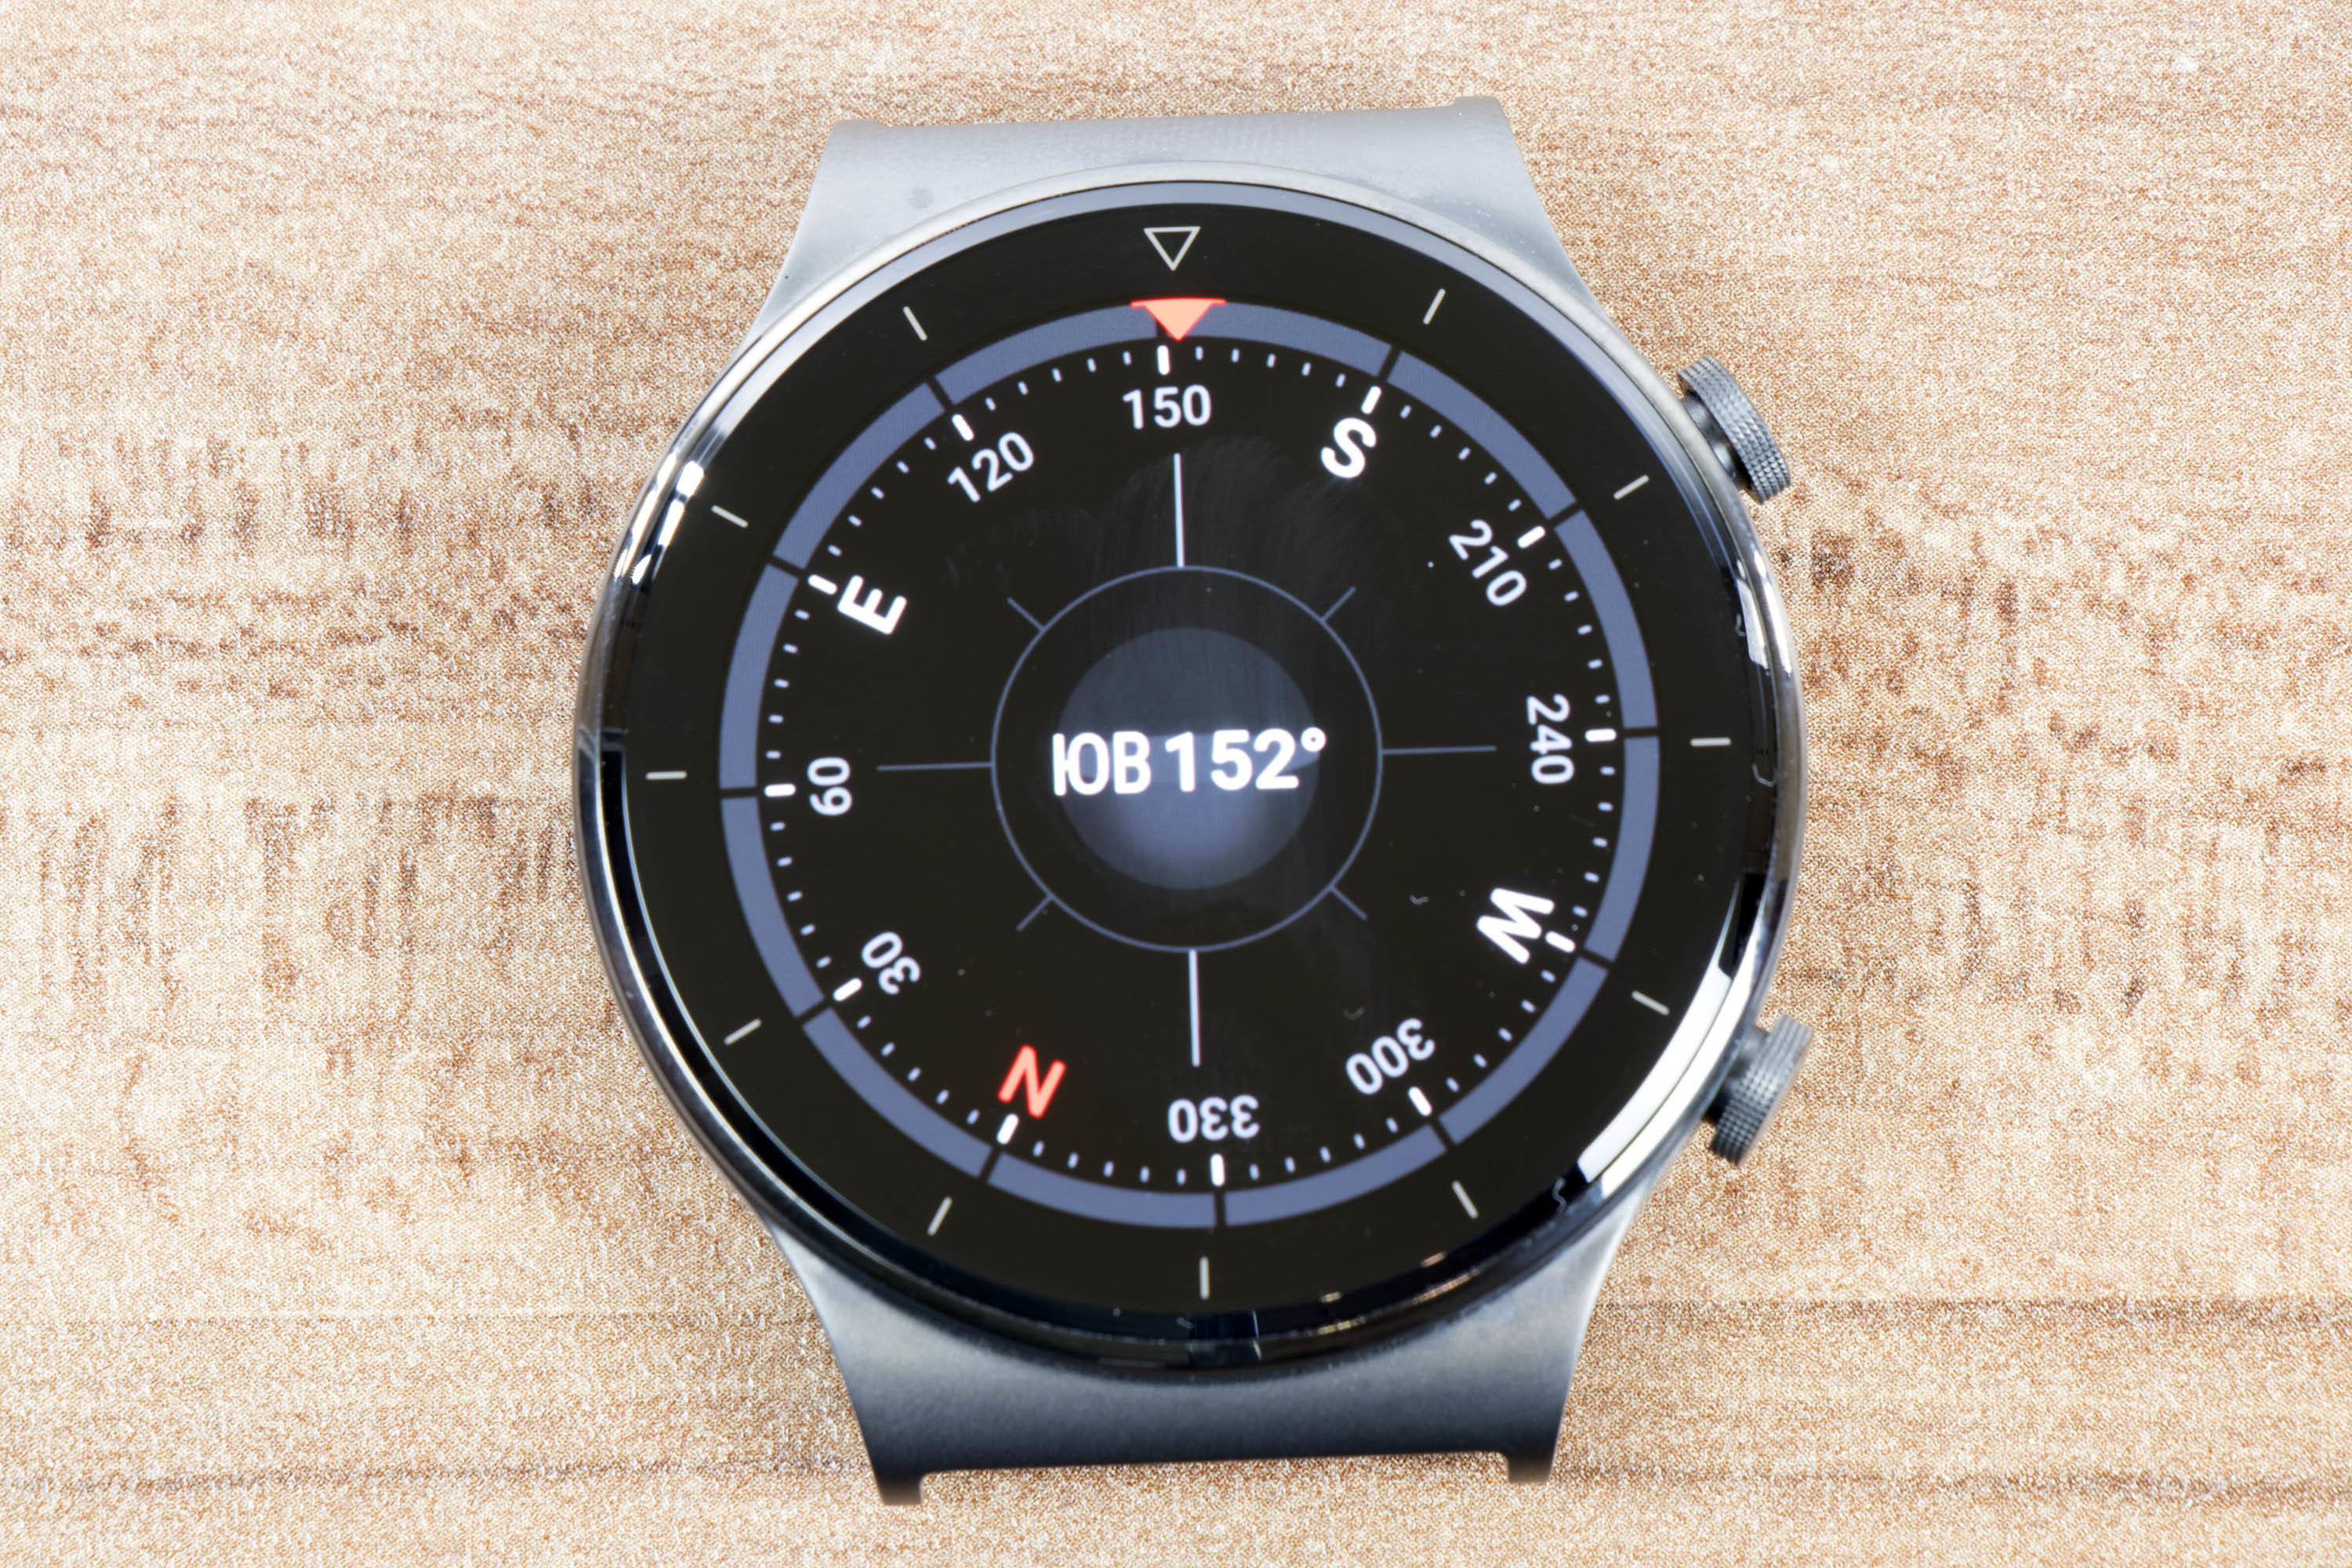 ⚡Часы Huawei Watch GT 2 Pro поступают в продажу в России 24 октября — предзаказ уже начался | Смарт-часы и фитнес-браслеты | Дайджест новостей | Клуб DNS